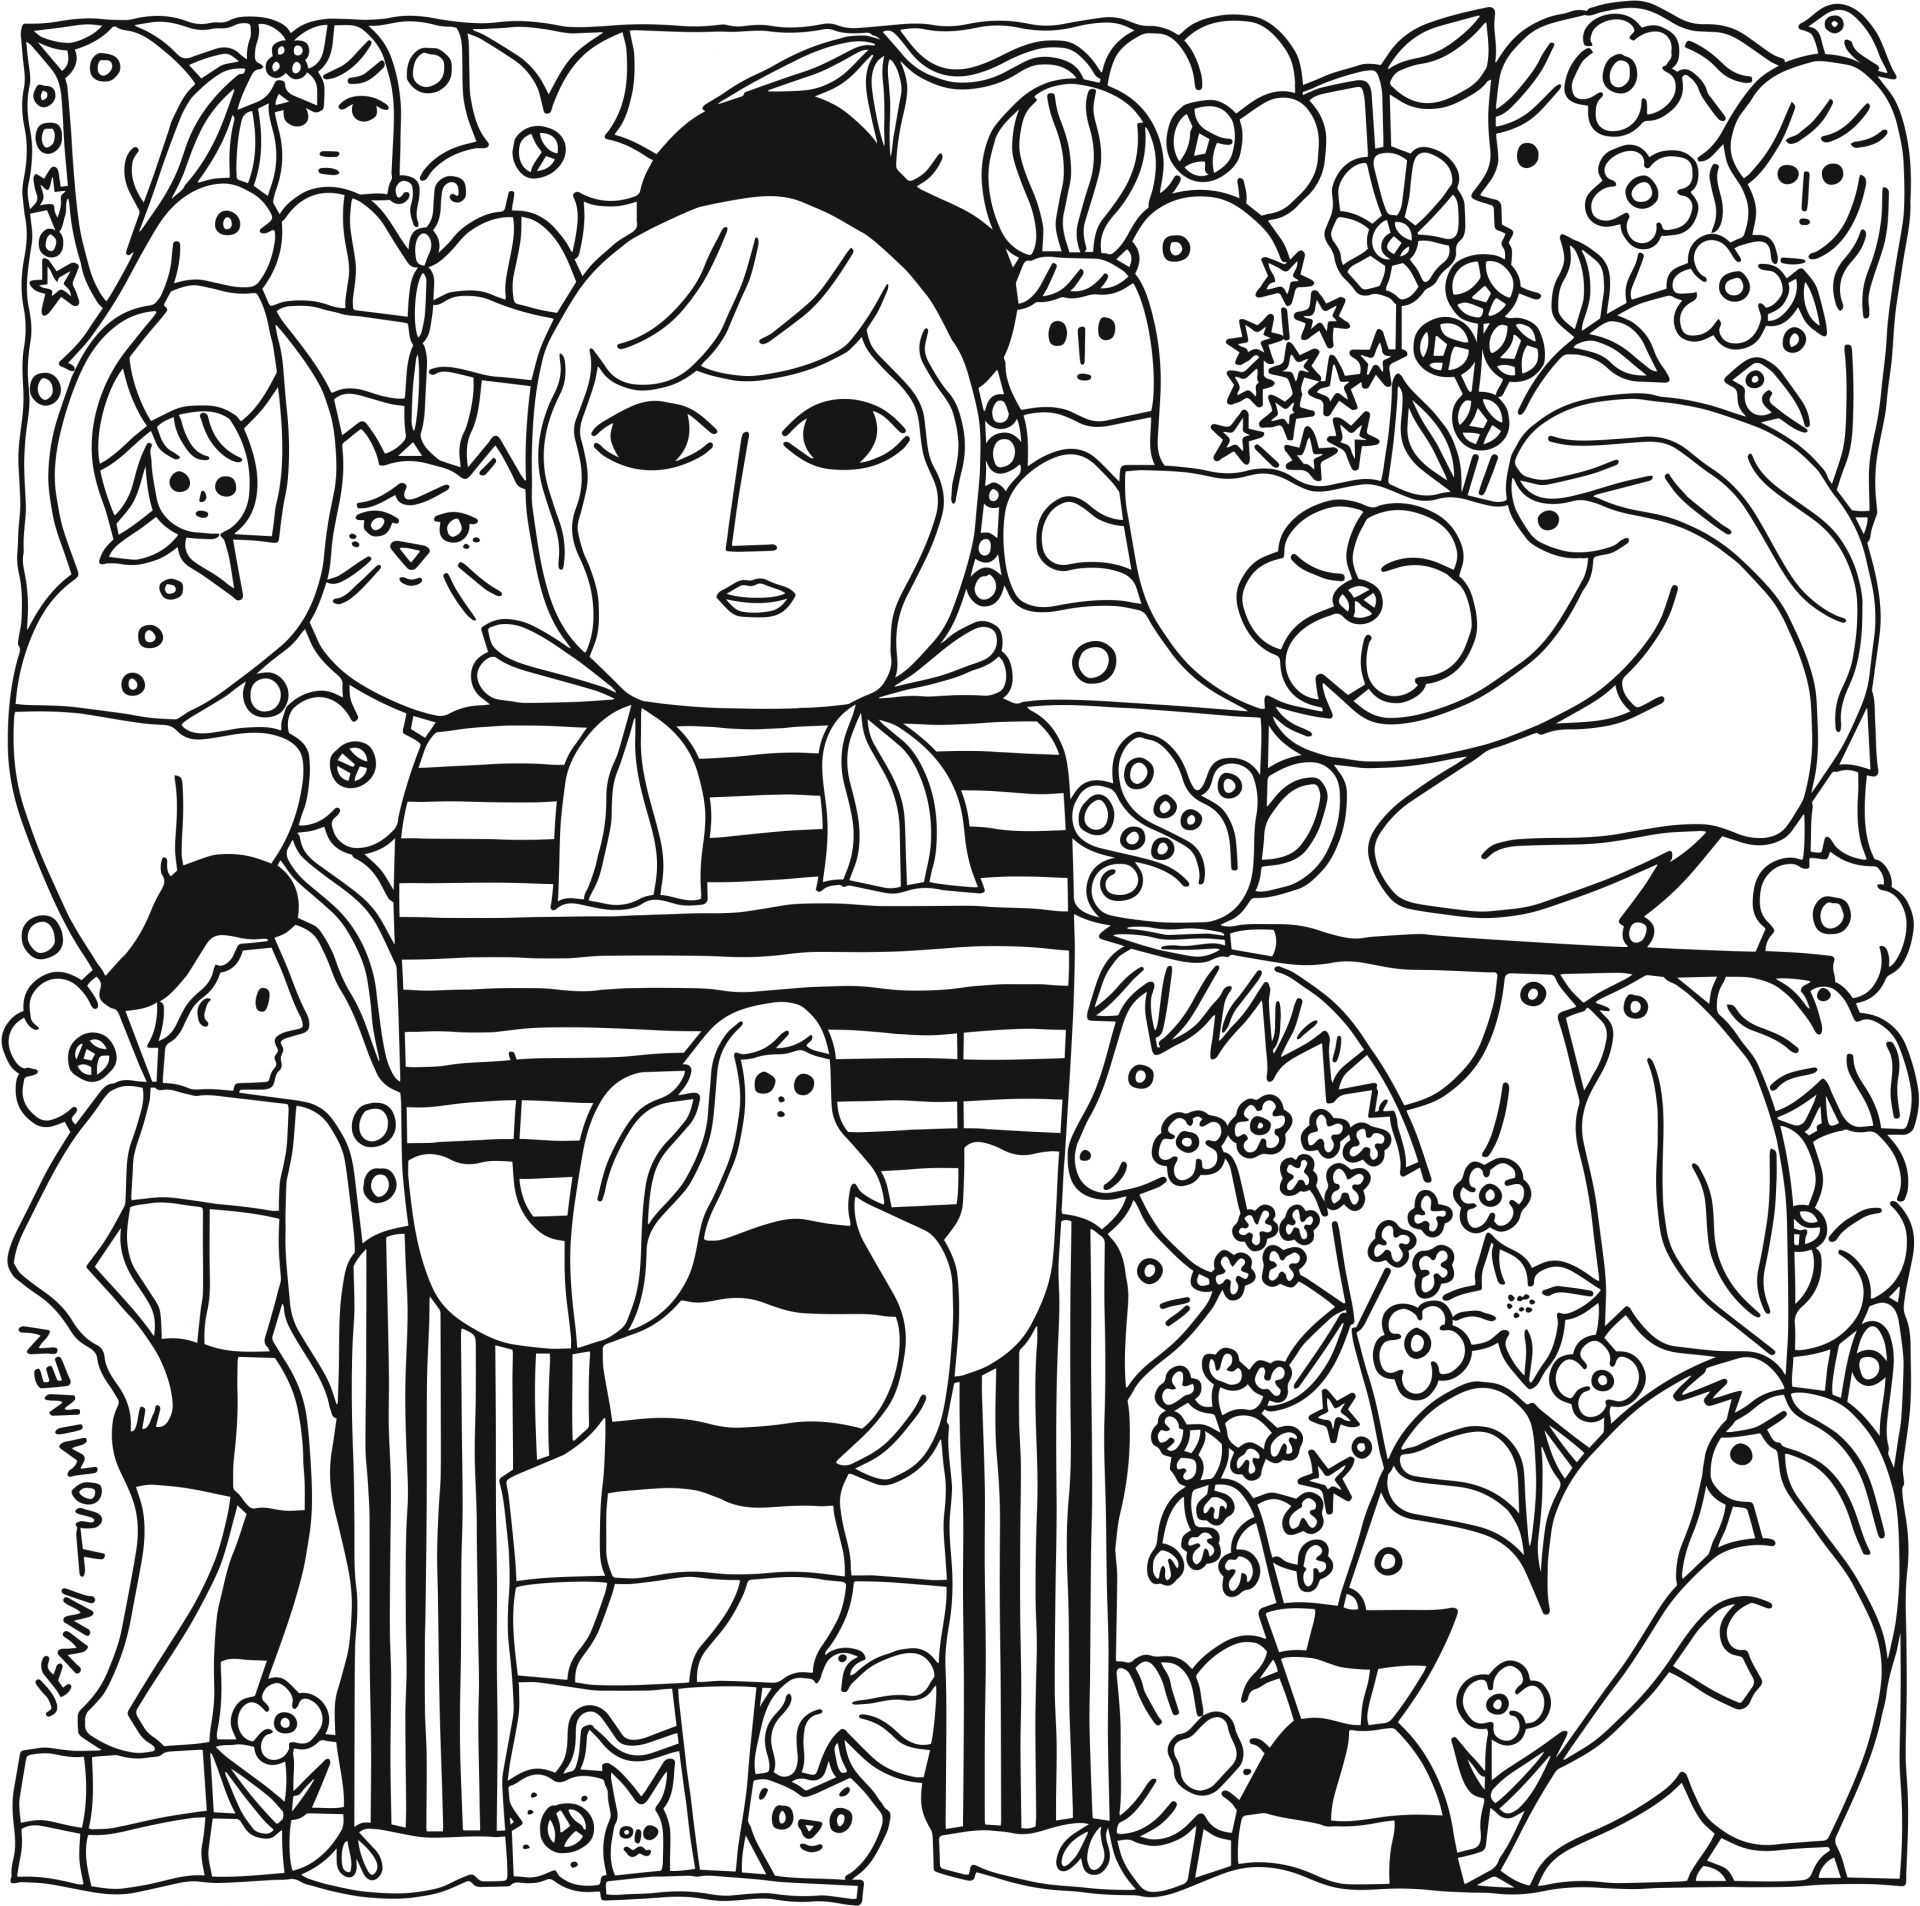 Svartvit illustration, ritade figurer av människor och djur. Gjord av illustratör Jenni Tuominen för Konstrundan 2022